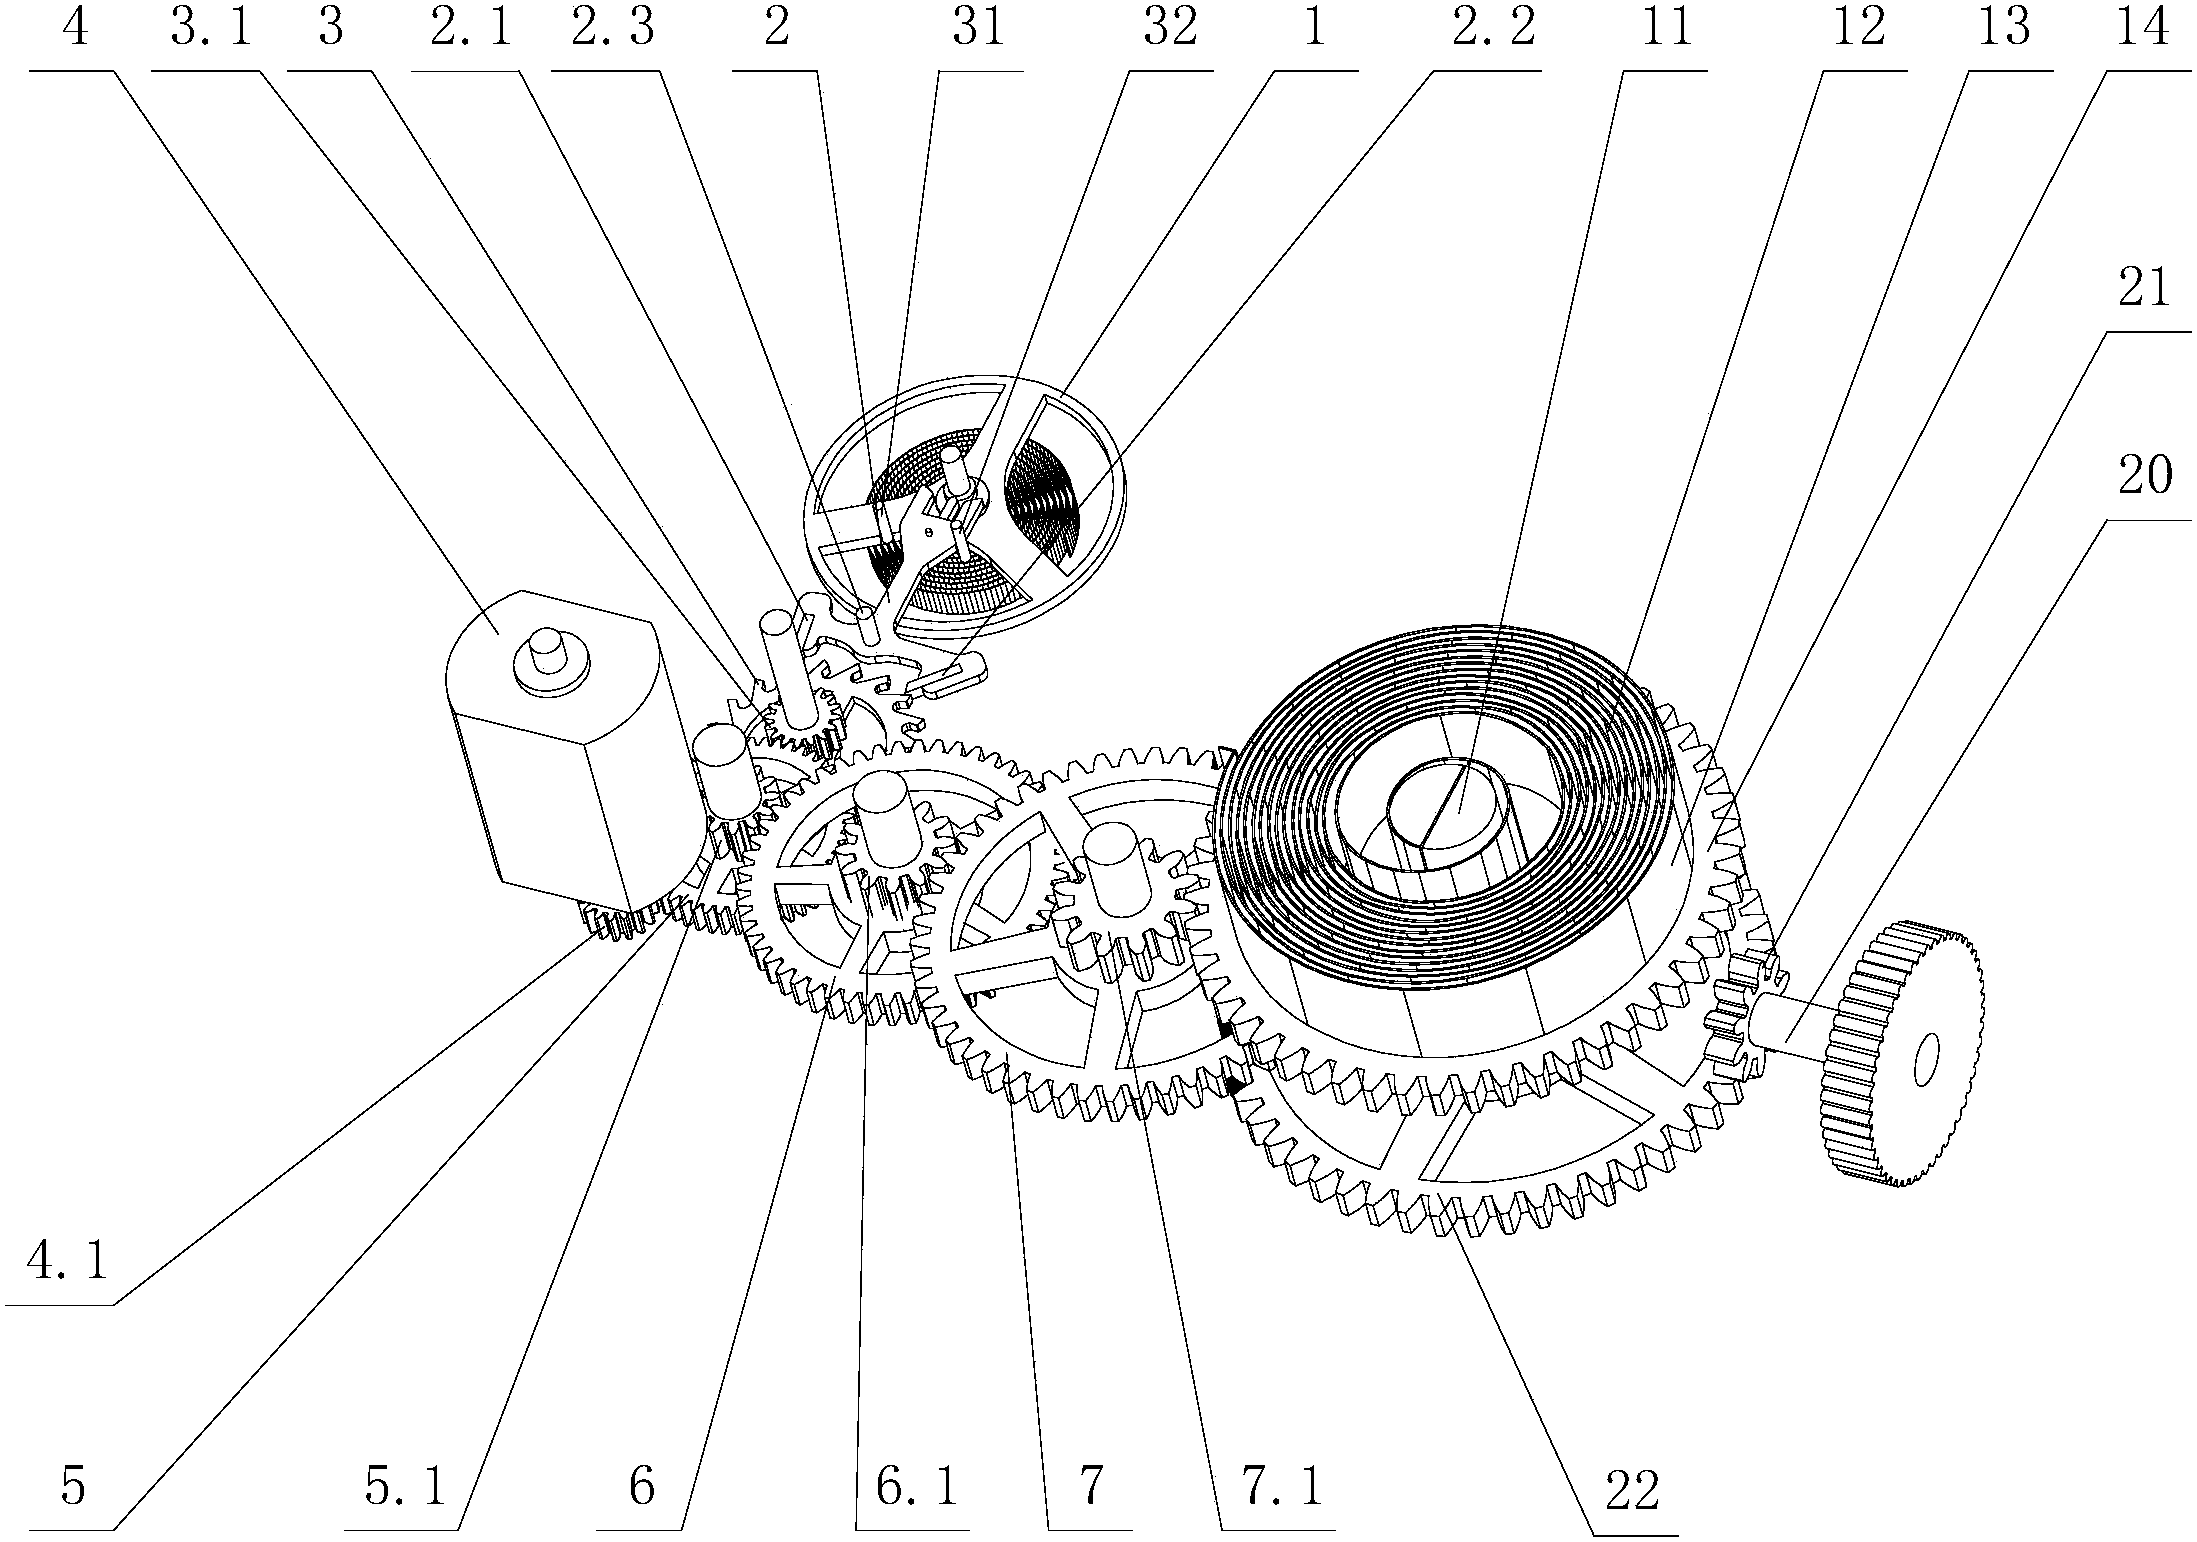 手摇发电机结构简图图片